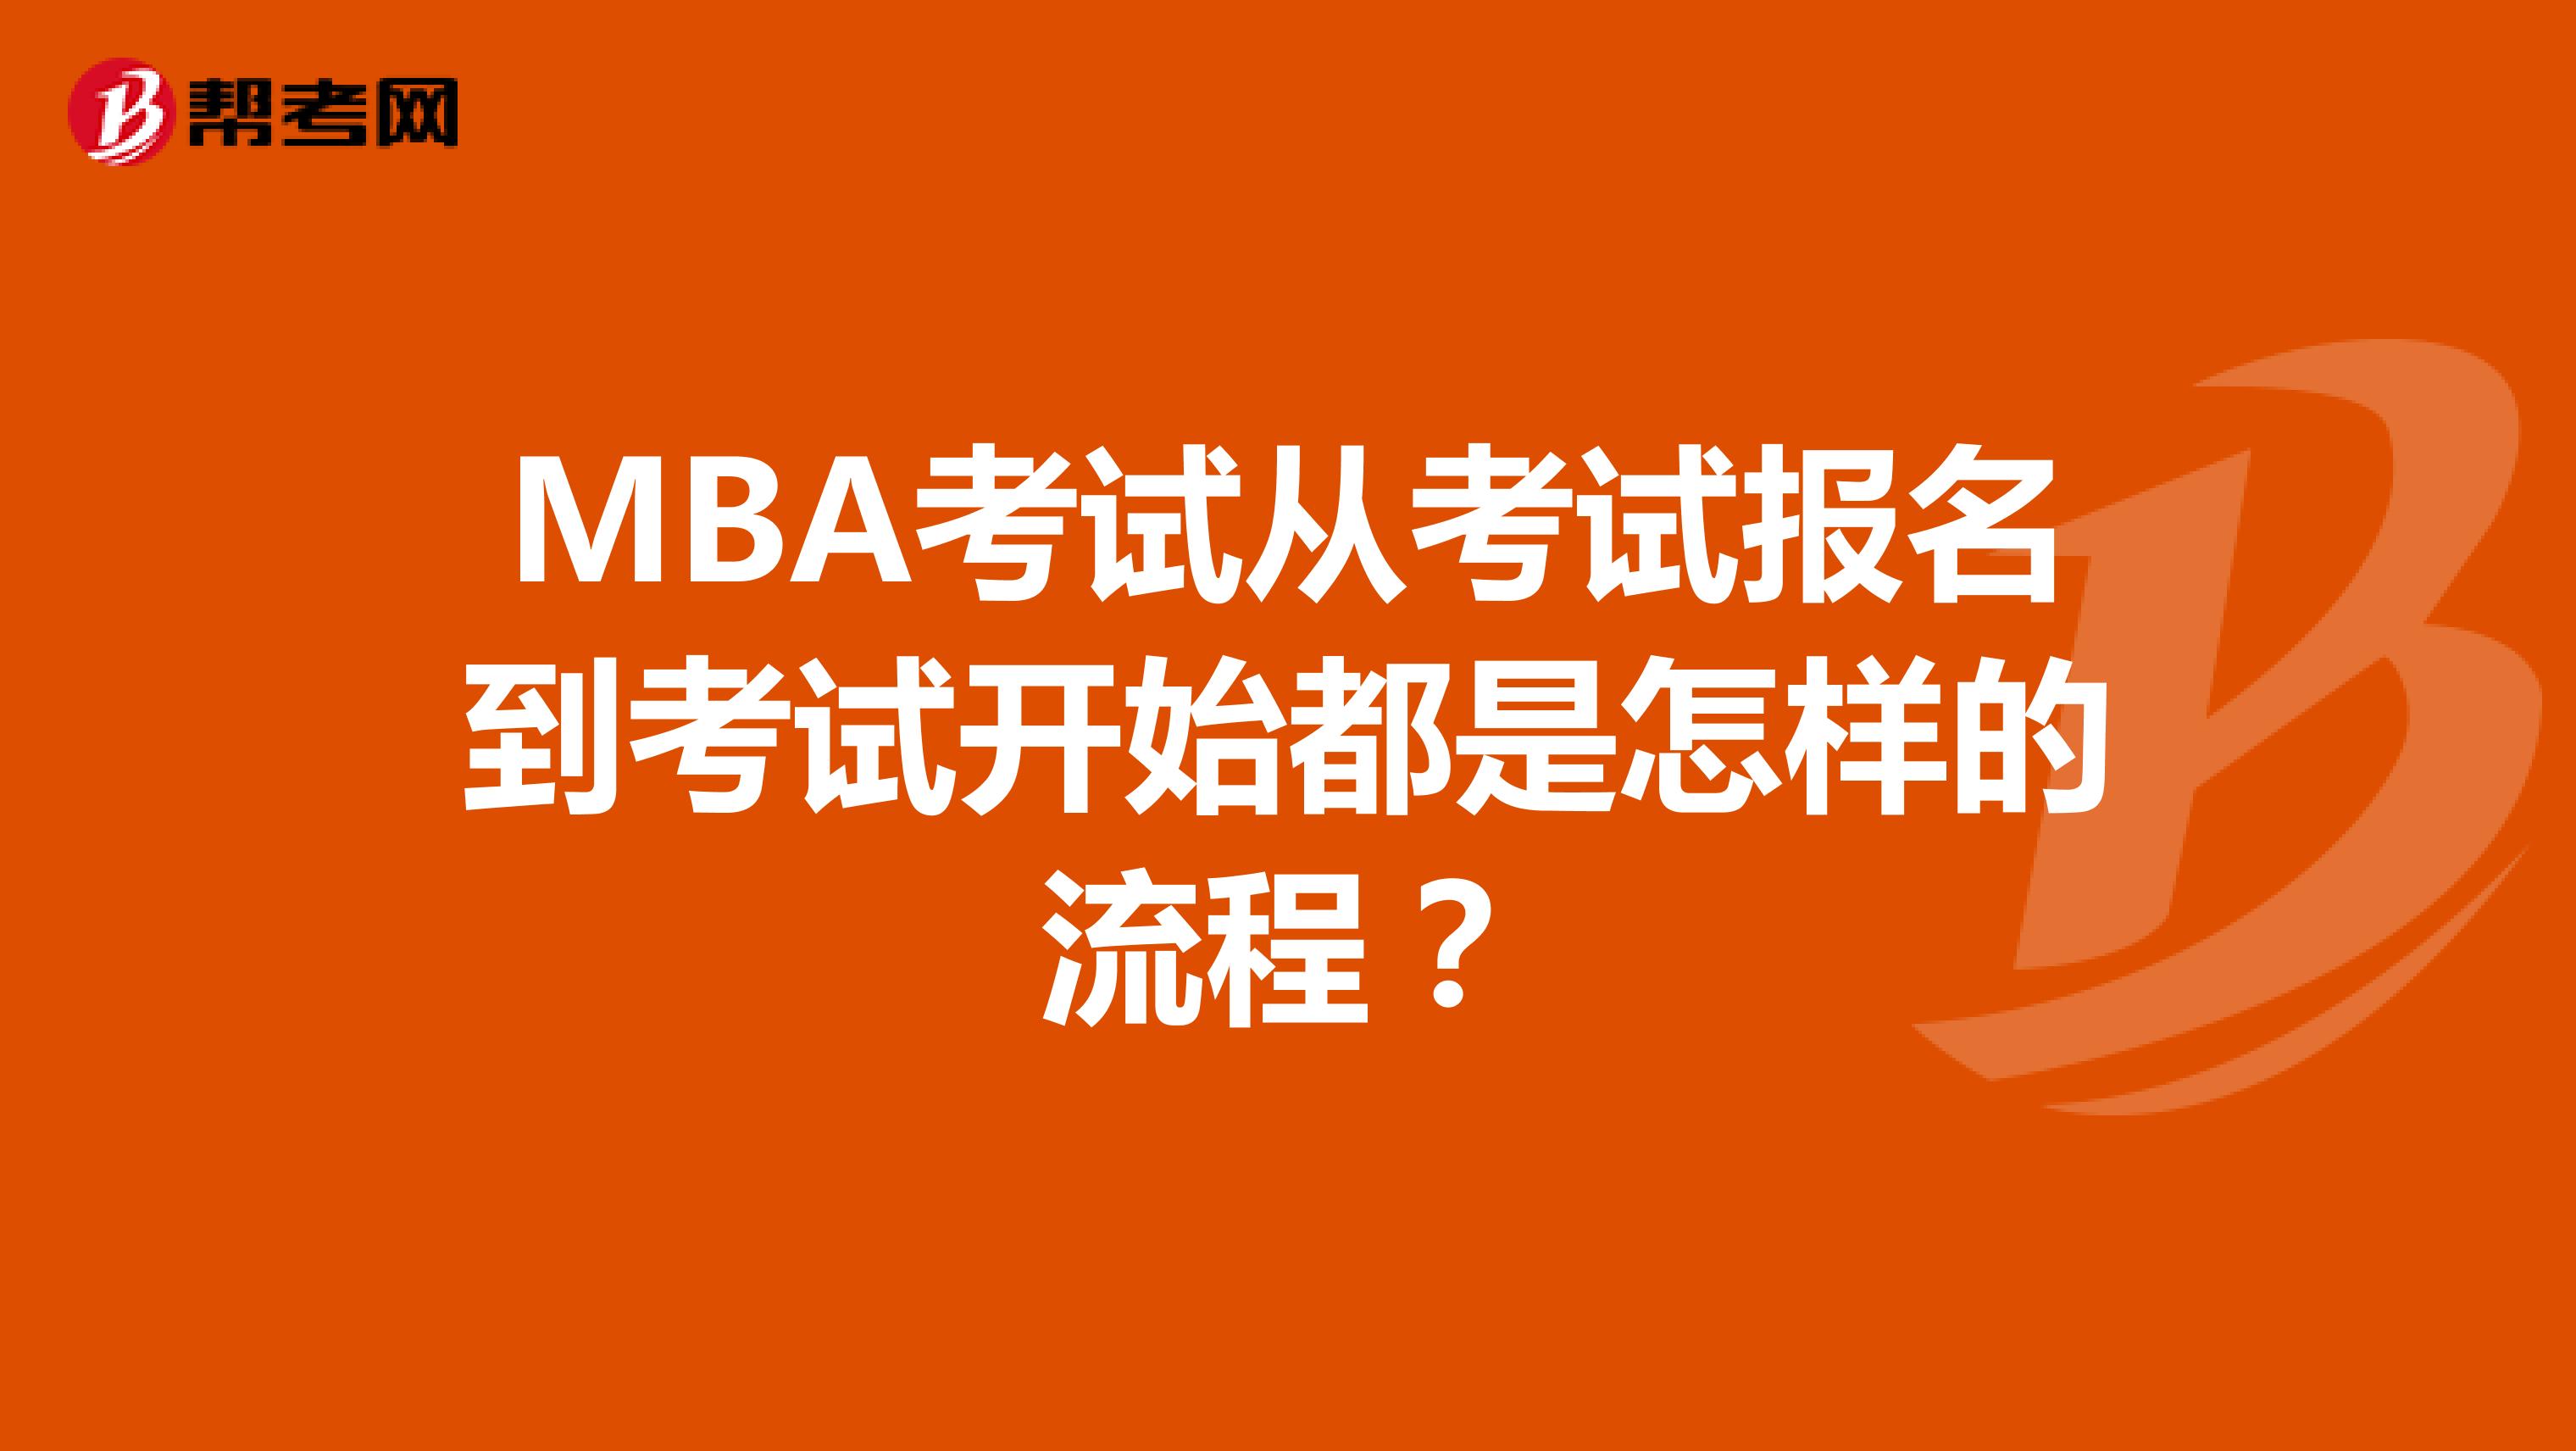 MBA考试从考试报名到考试开始都是怎样的流程？